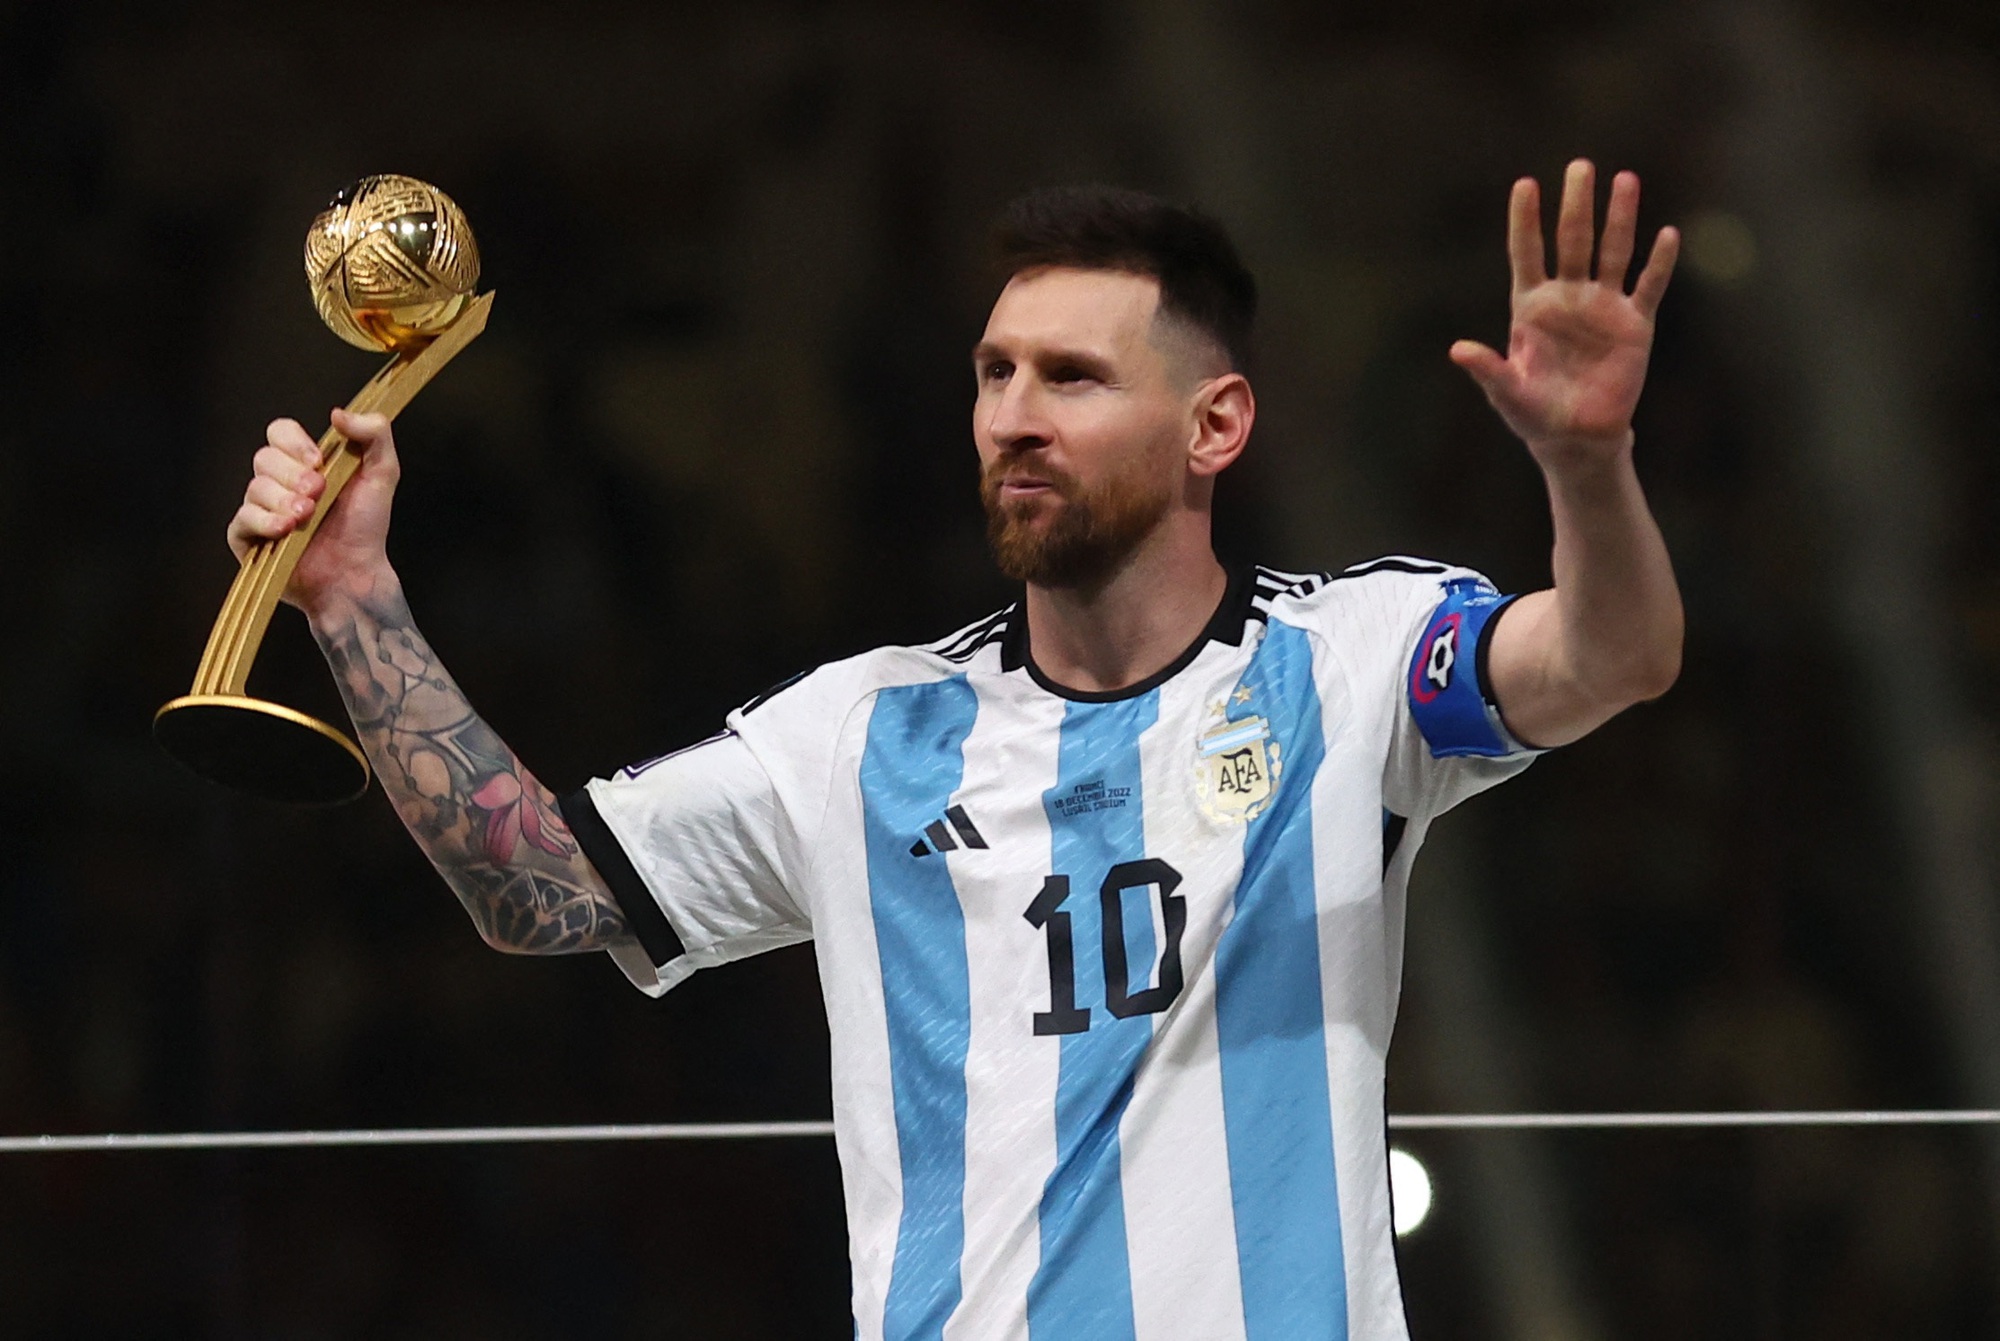 Giải đáp cầu thủ Messi sinh năm bao nhiêu?